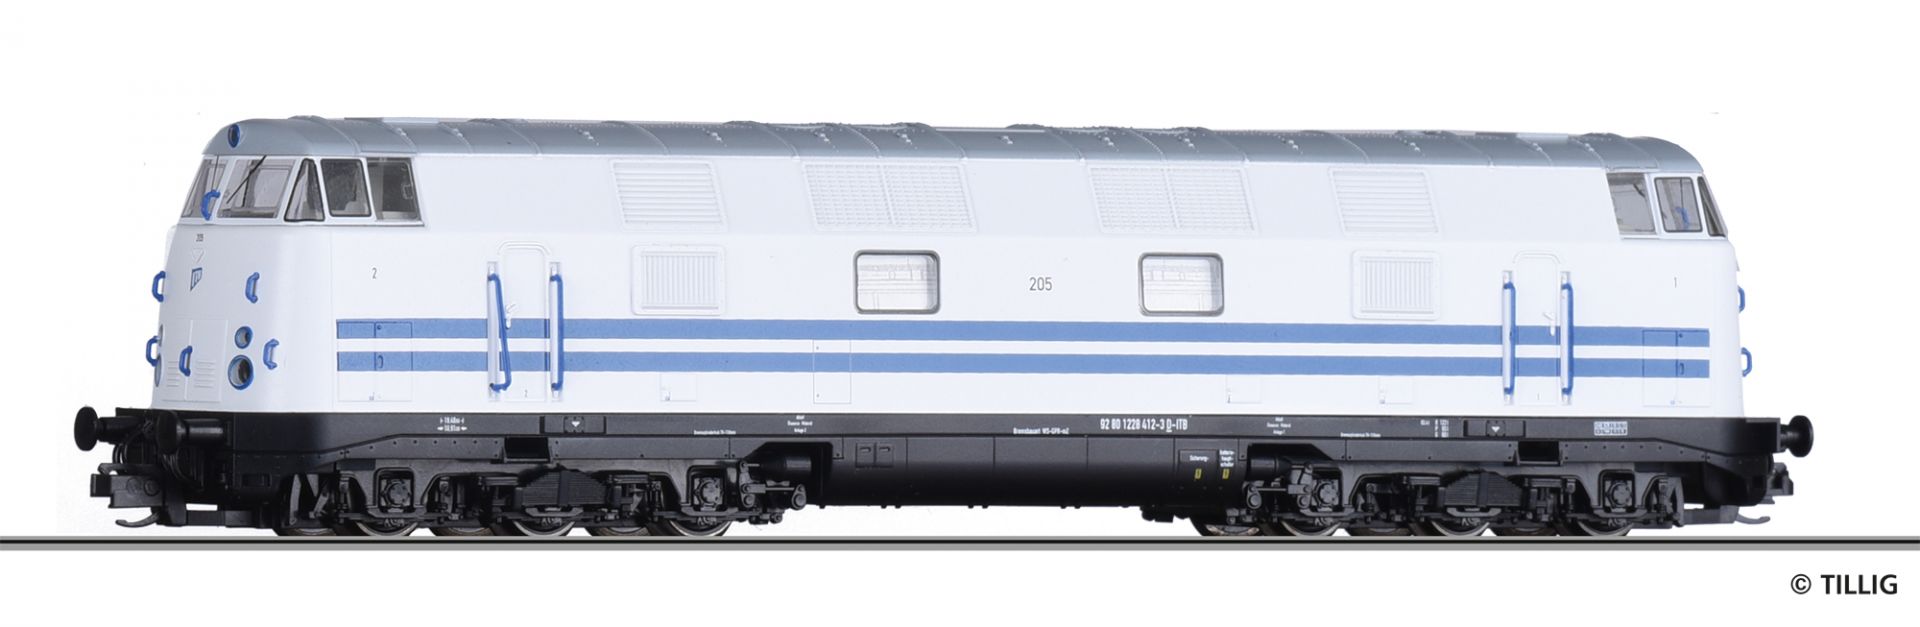 04650 | Diesellokomotive Industrie Transportgesell. Brandenburg mbH -werksseitig ausverkauft-